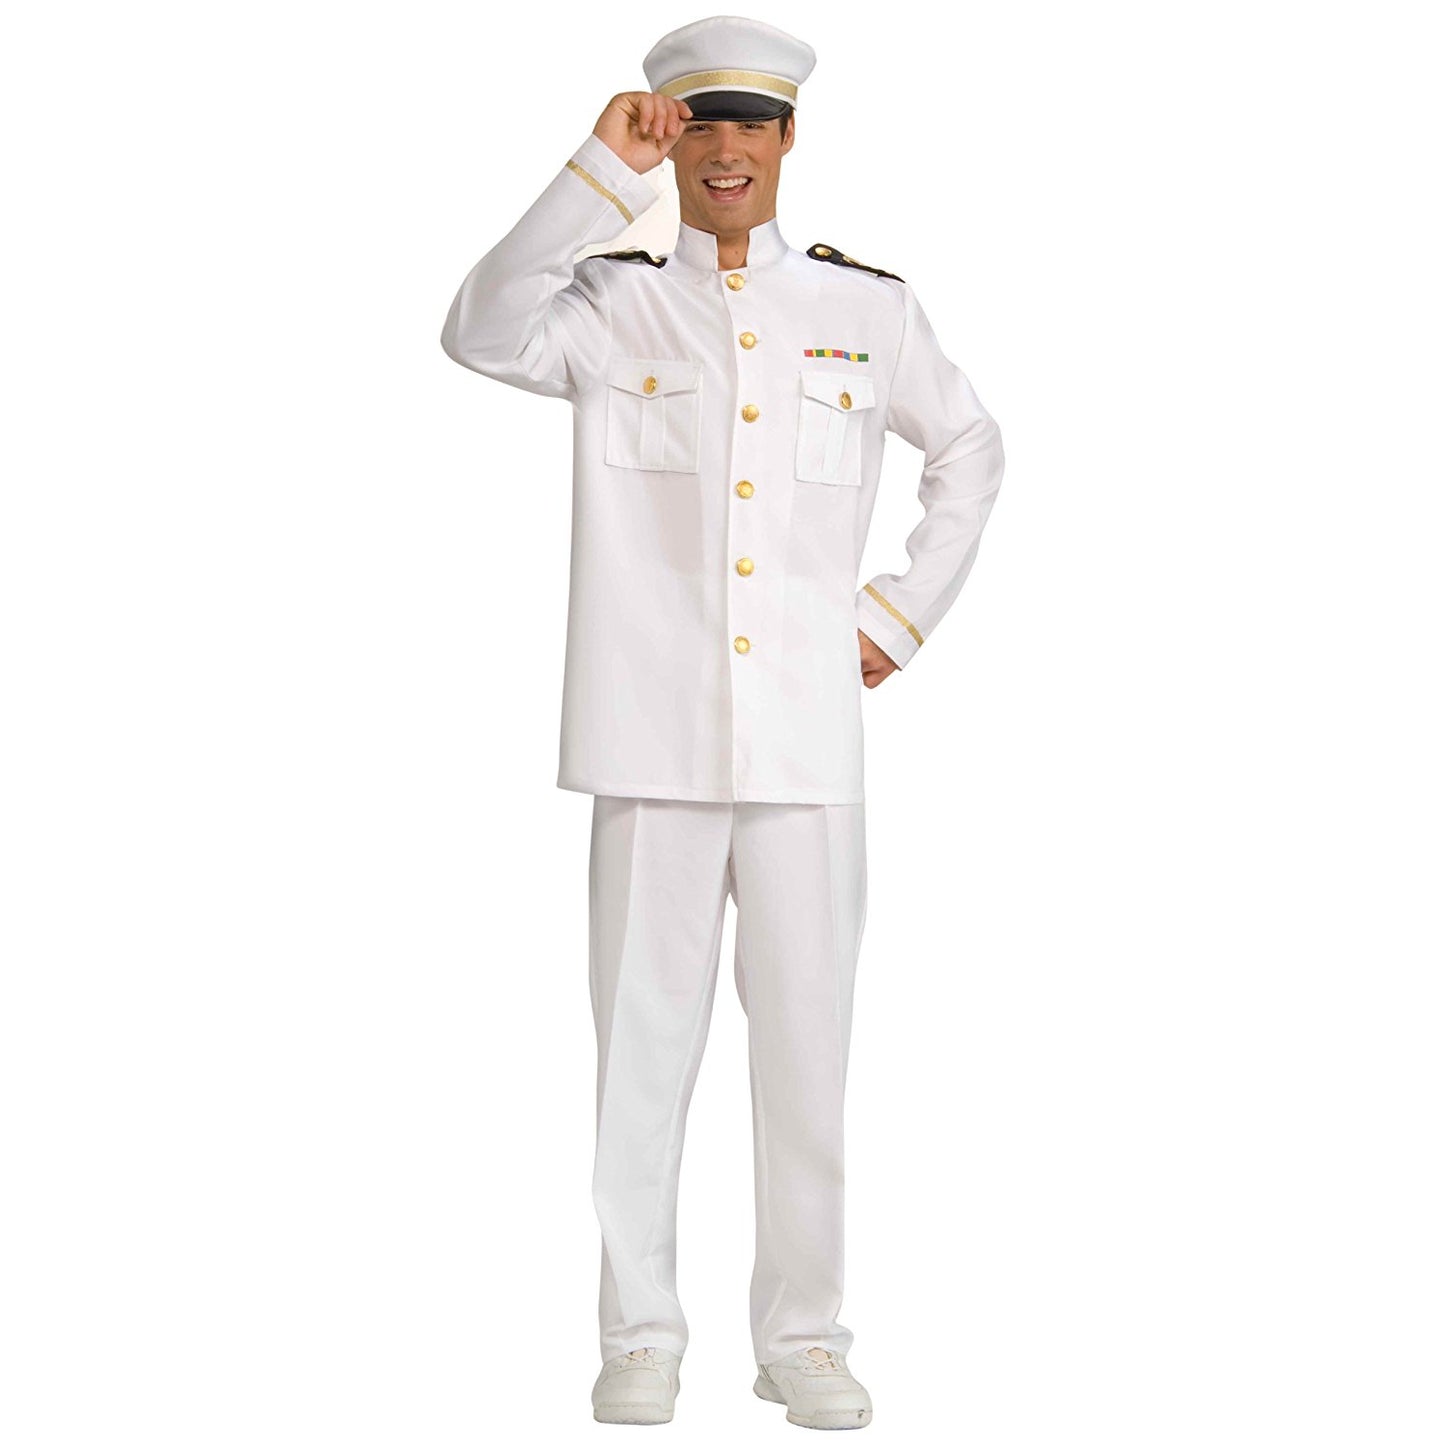 Captain Cruise Costume